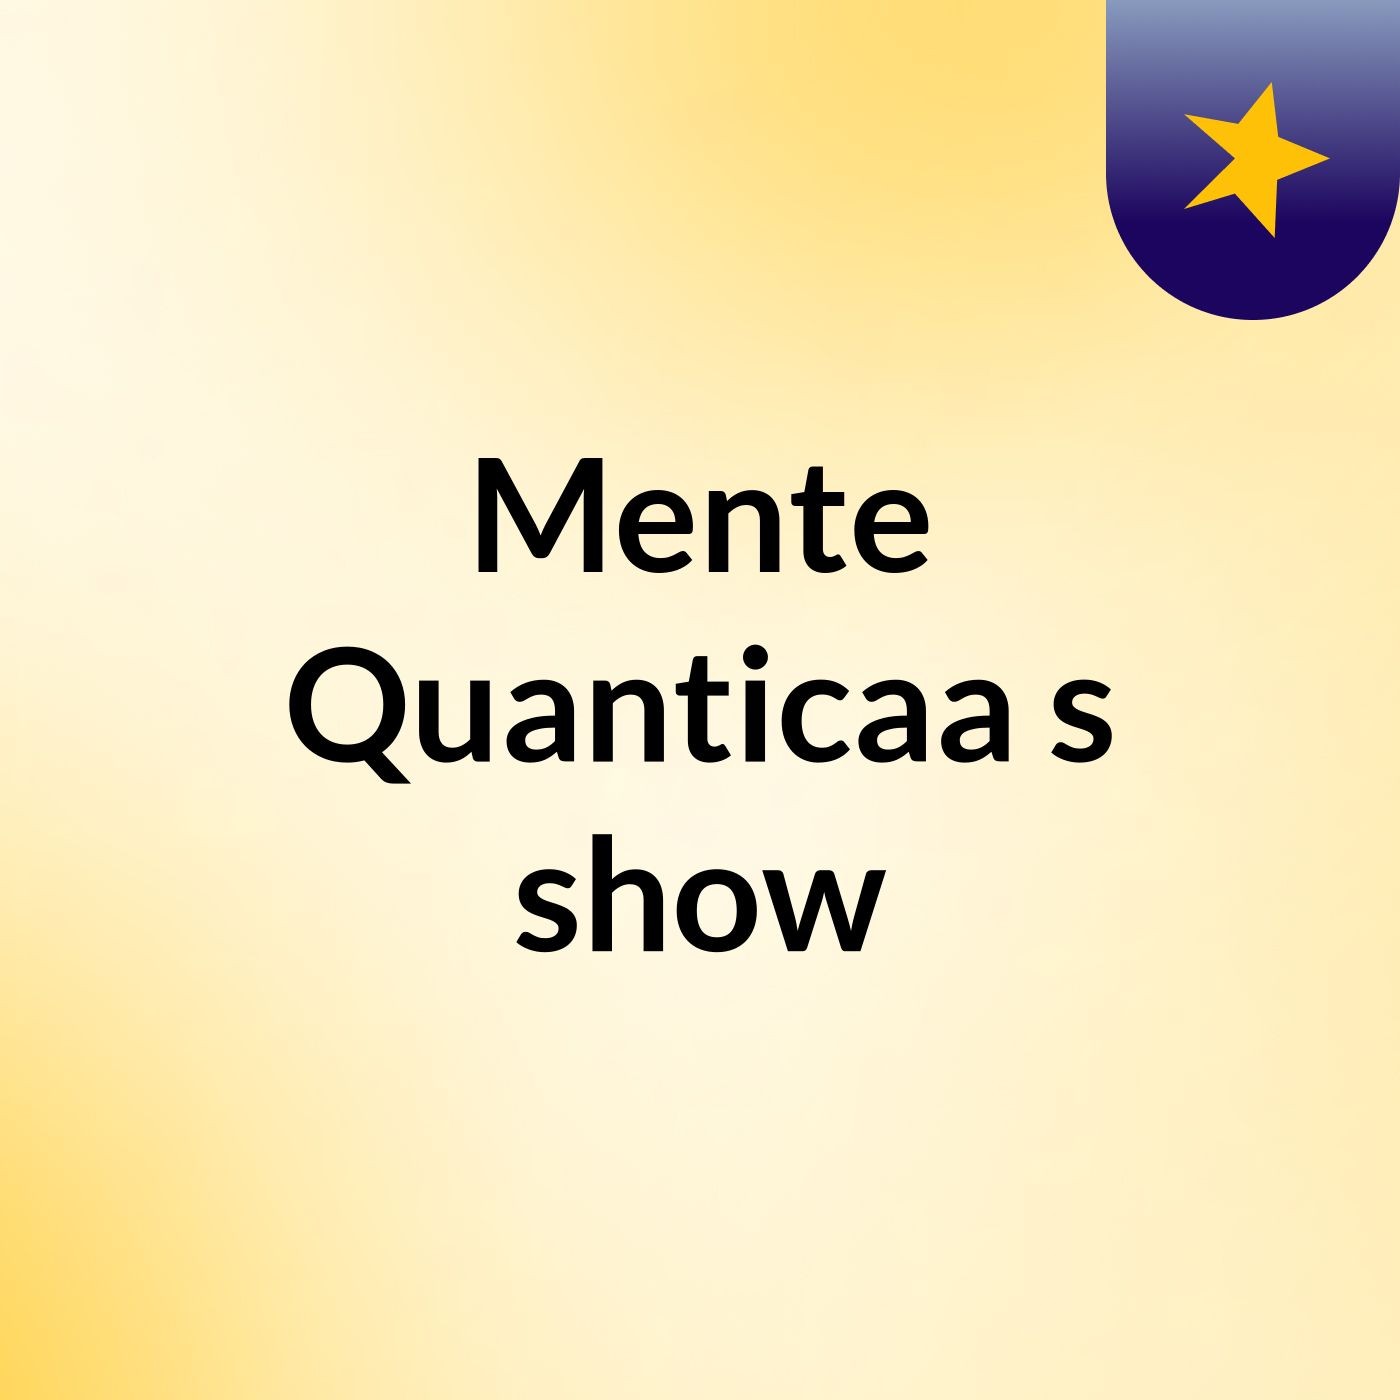 Mente Quanticaa's show